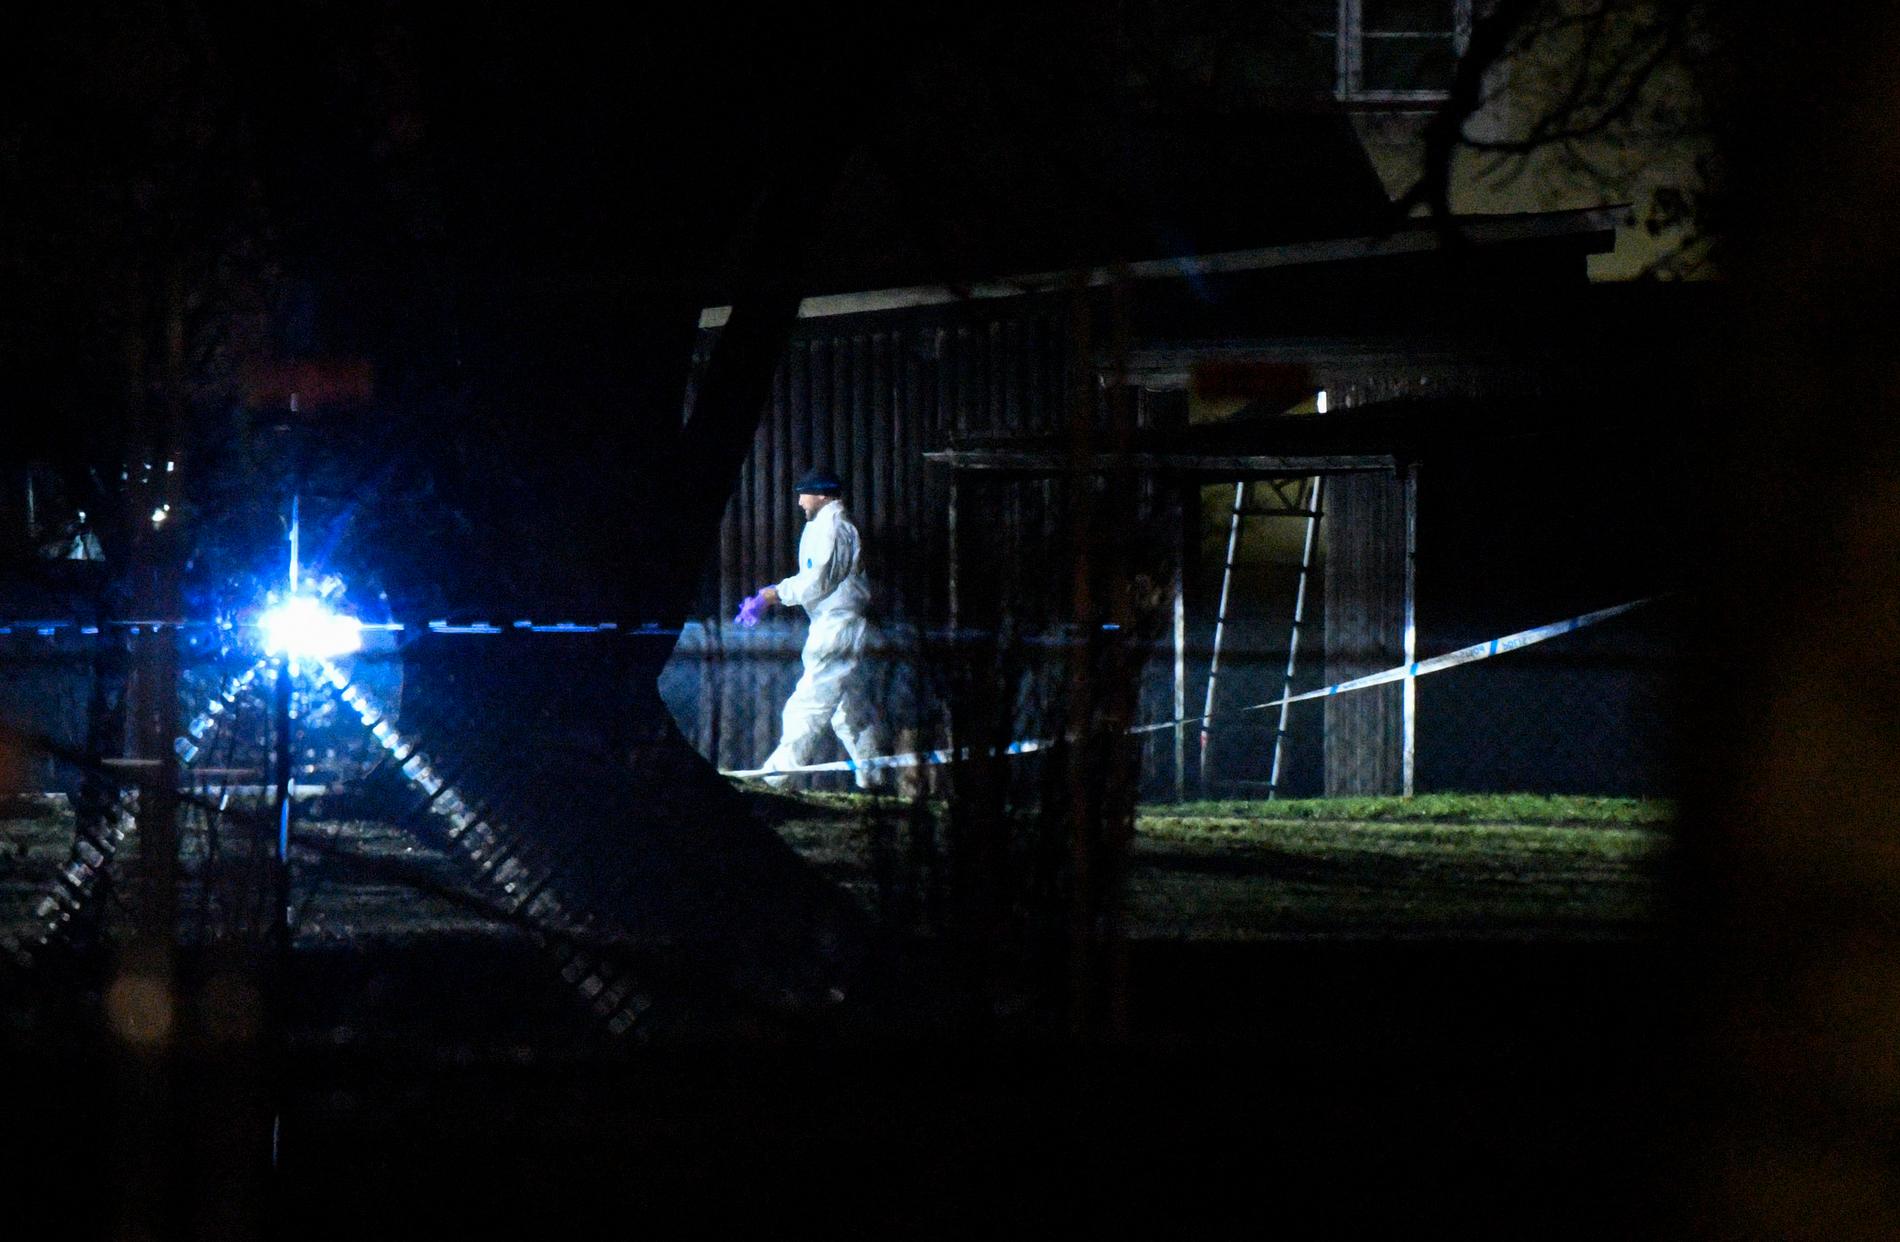 olisens kriminaltekniker på plats på Segevång i Malmö i torsdags med anledning av att en man hittats skjuten till döds.